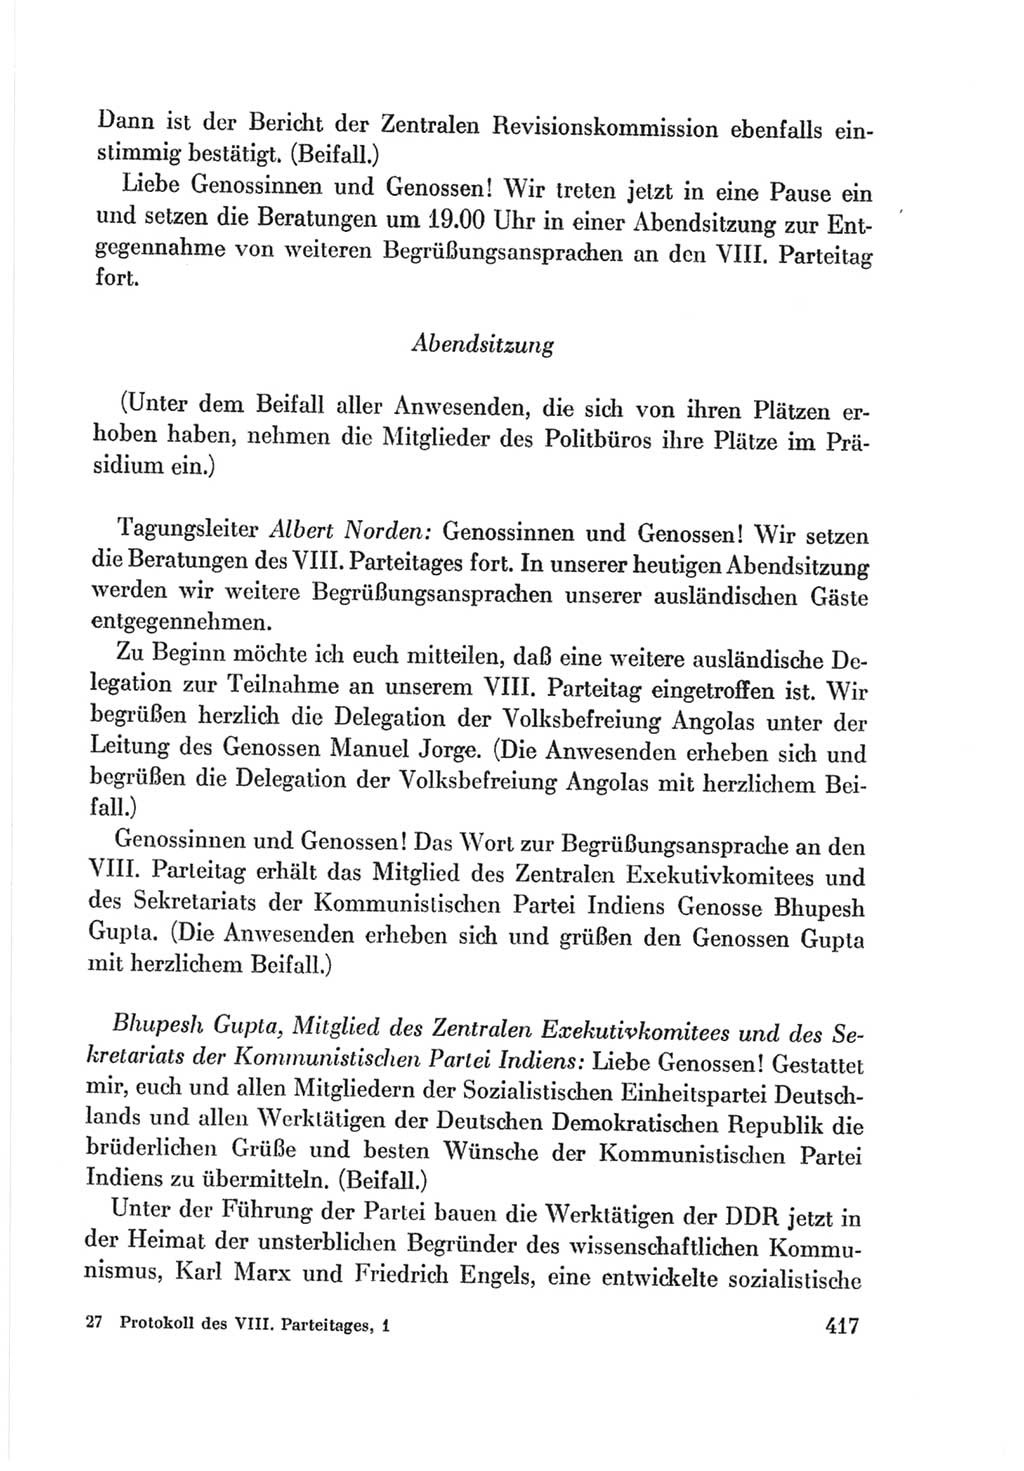 Protokoll der Verhandlungen des Ⅷ. Parteitages der Sozialistischen Einheitspartei Deutschlands (SED) [Deutsche Demokratische Republik (DDR)] 1971, Band 1, Seite 417 (Prot. Verh. Ⅷ. PT SED DDR 1971, Bd. 1, S. 417)